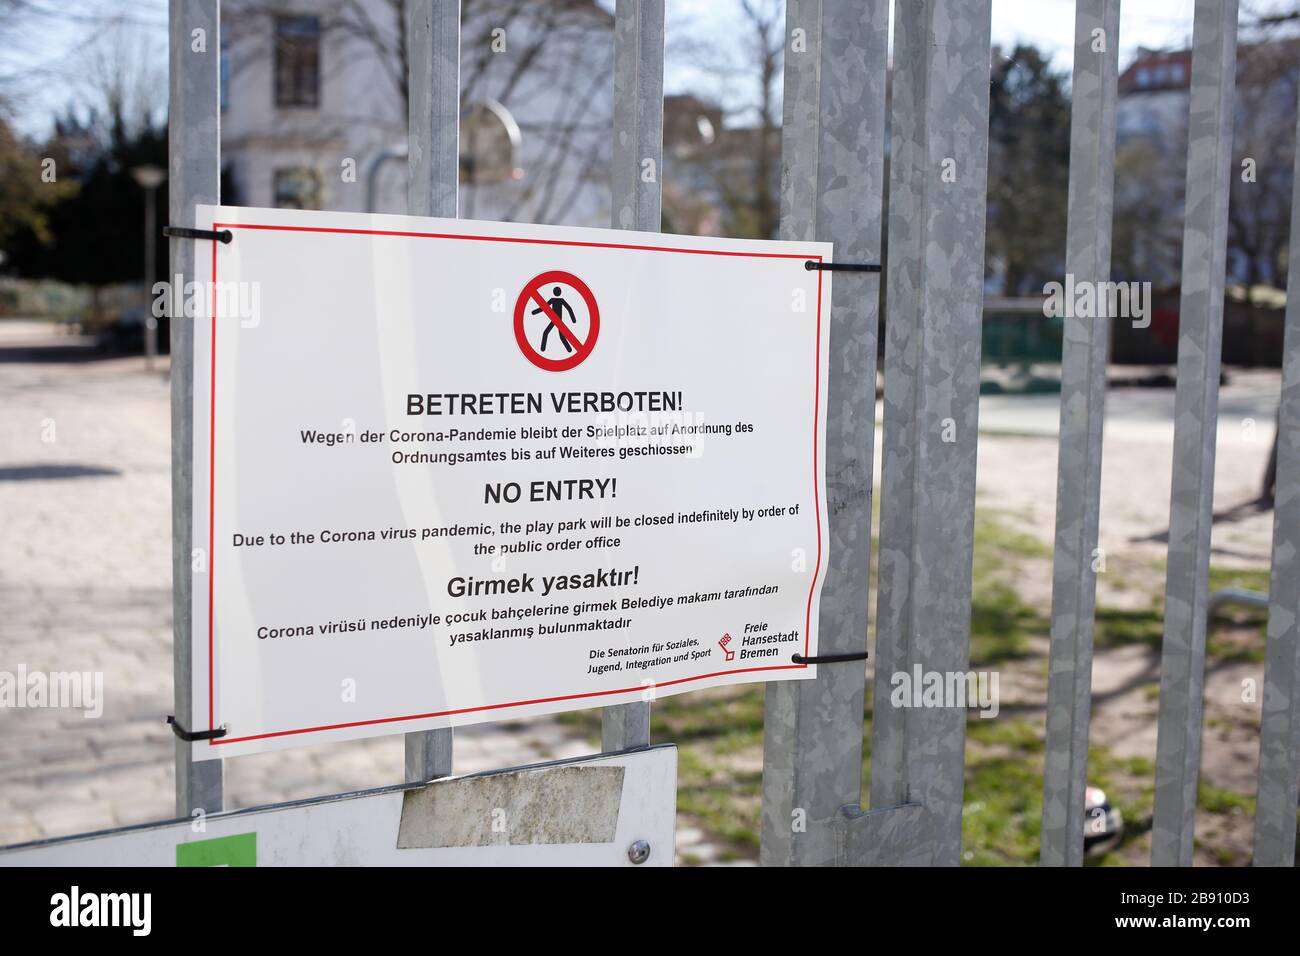 Schild Spielplatz wegen Coronavirus geschlossen, betreten verboten Foto de stock